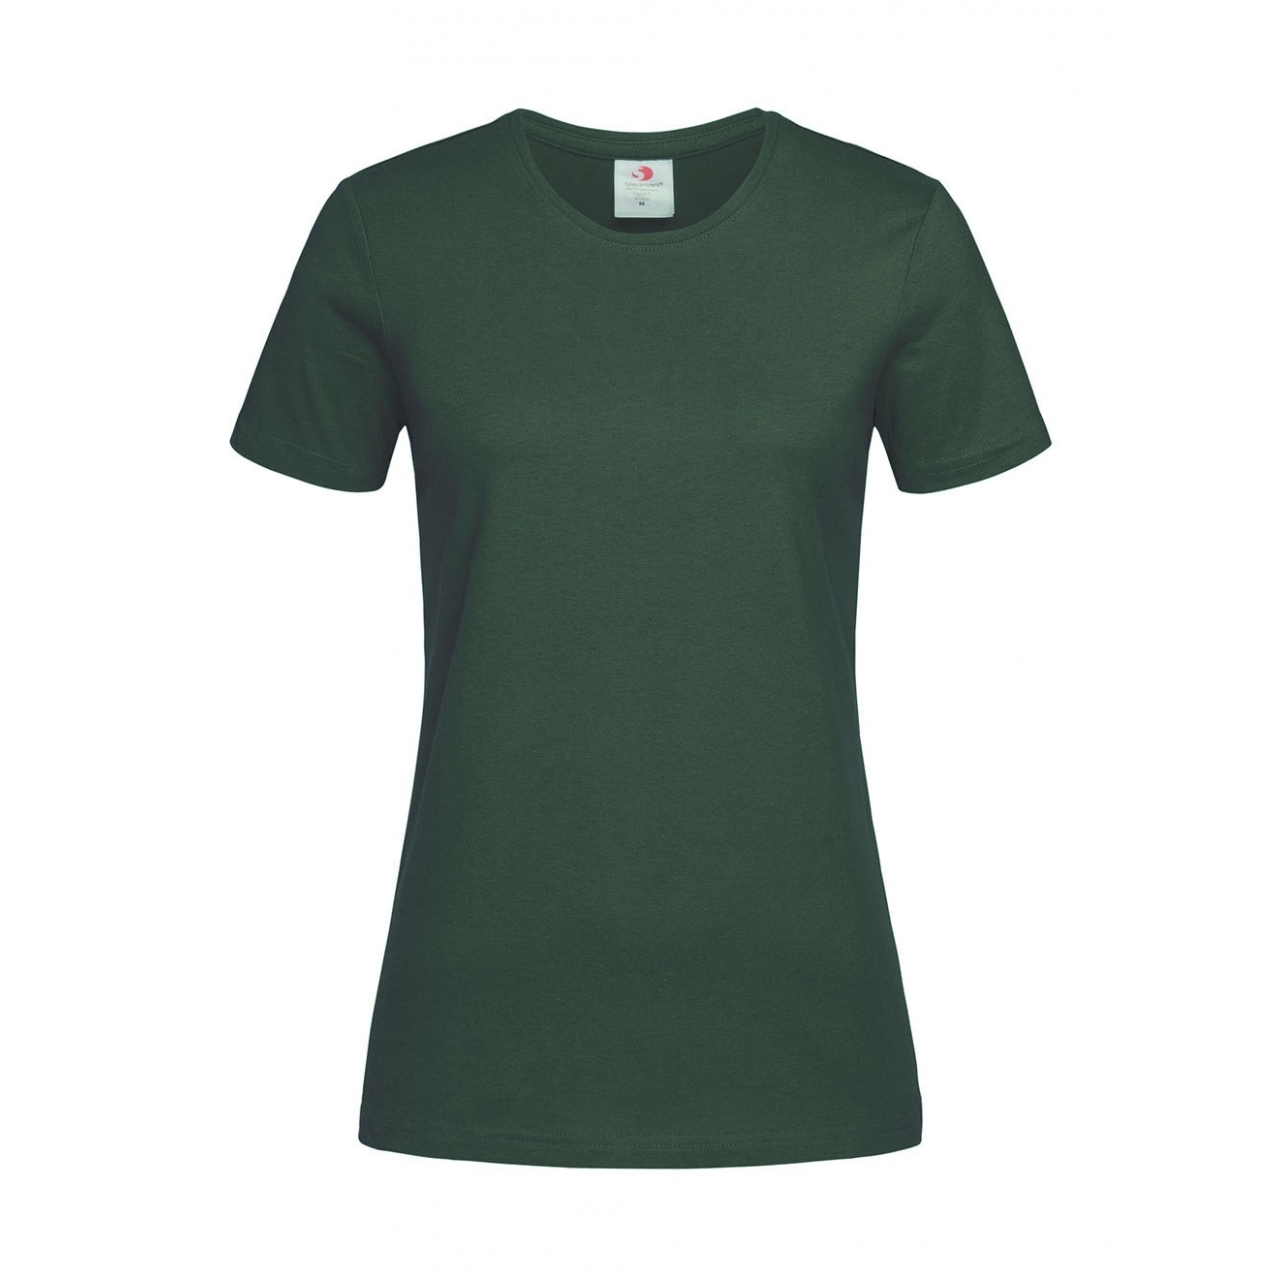 Tričko dámské Stedman Fitted s kulatým výstřihem - tmavě zelené, XL